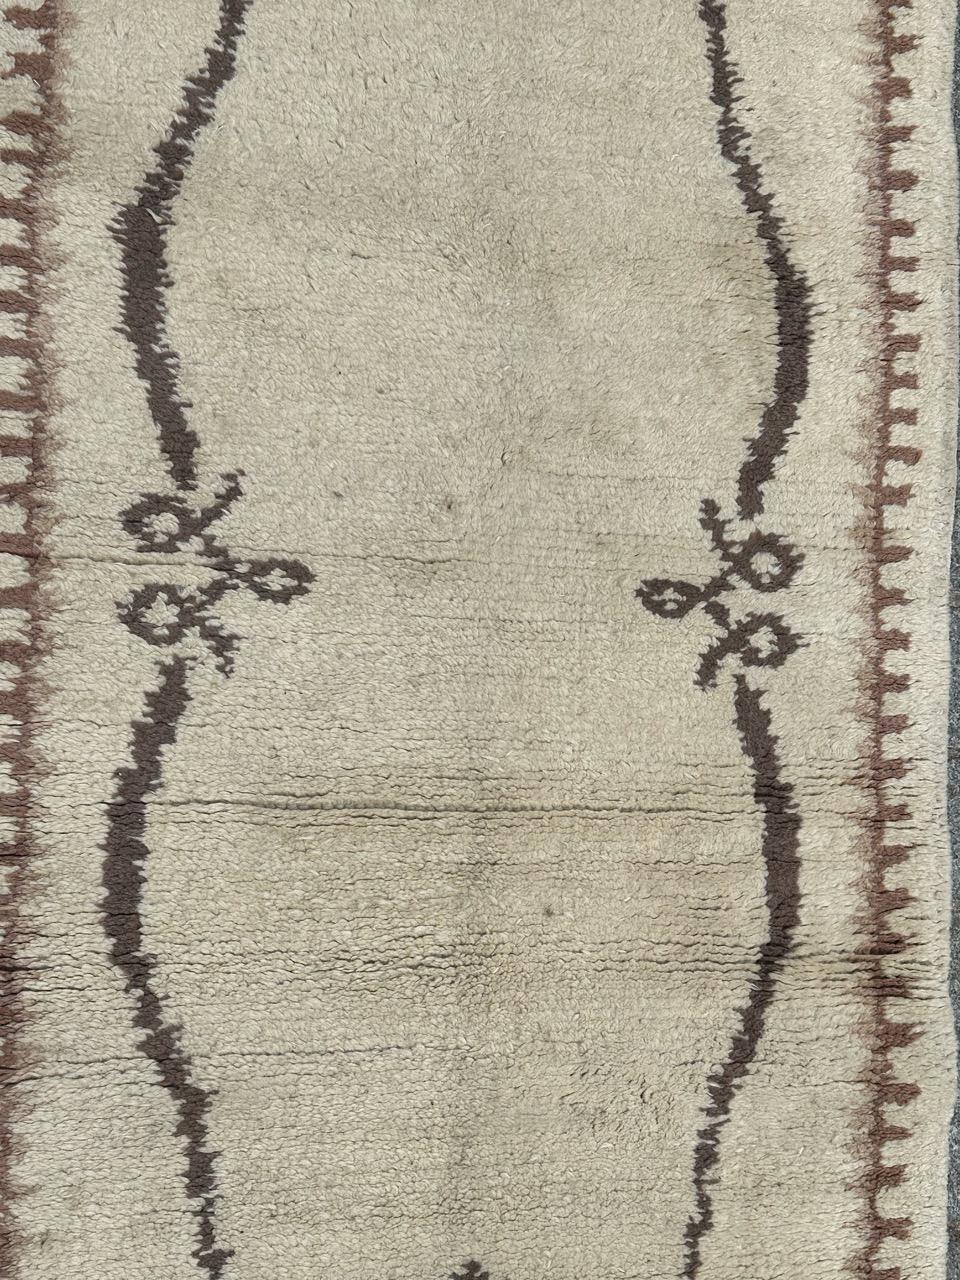 Joli tapis marocain du milieu du 20e siècle avec un design des tapis art déco français et de belles couleurs avec un fond blanc et un at design marron. Entièrement noué à la main avec de la laine sur une base de coton 

✨✨✨
